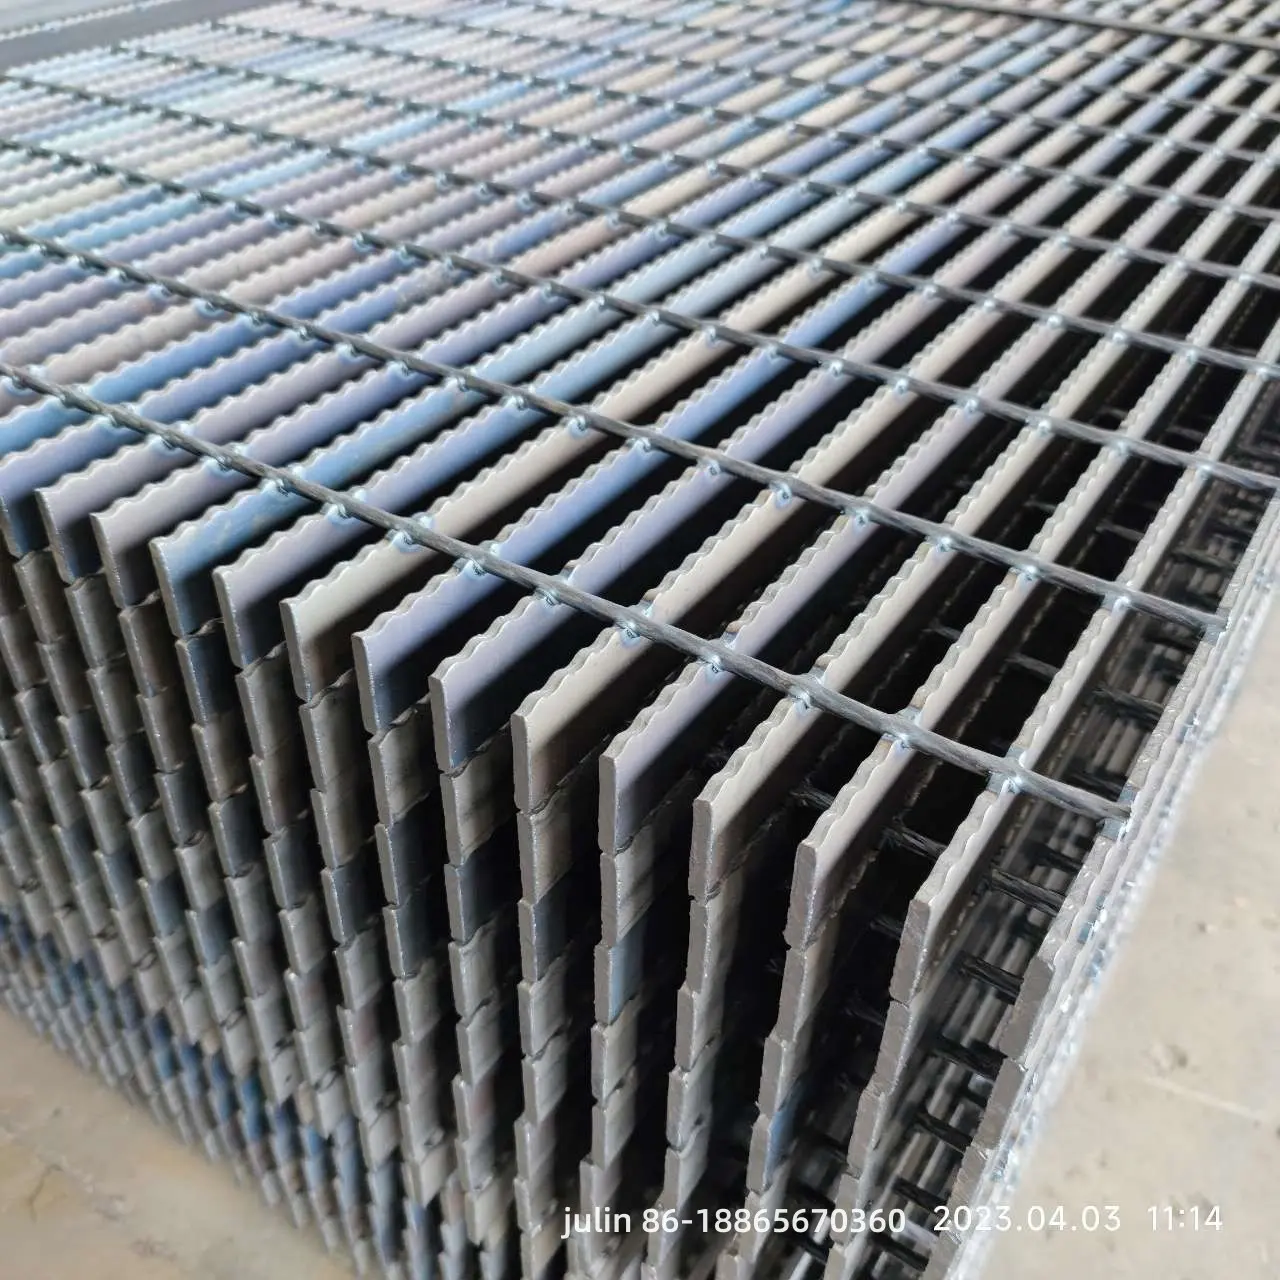 Rejilla de drenaje de acero galvanizado de materiales de construcción metálicos